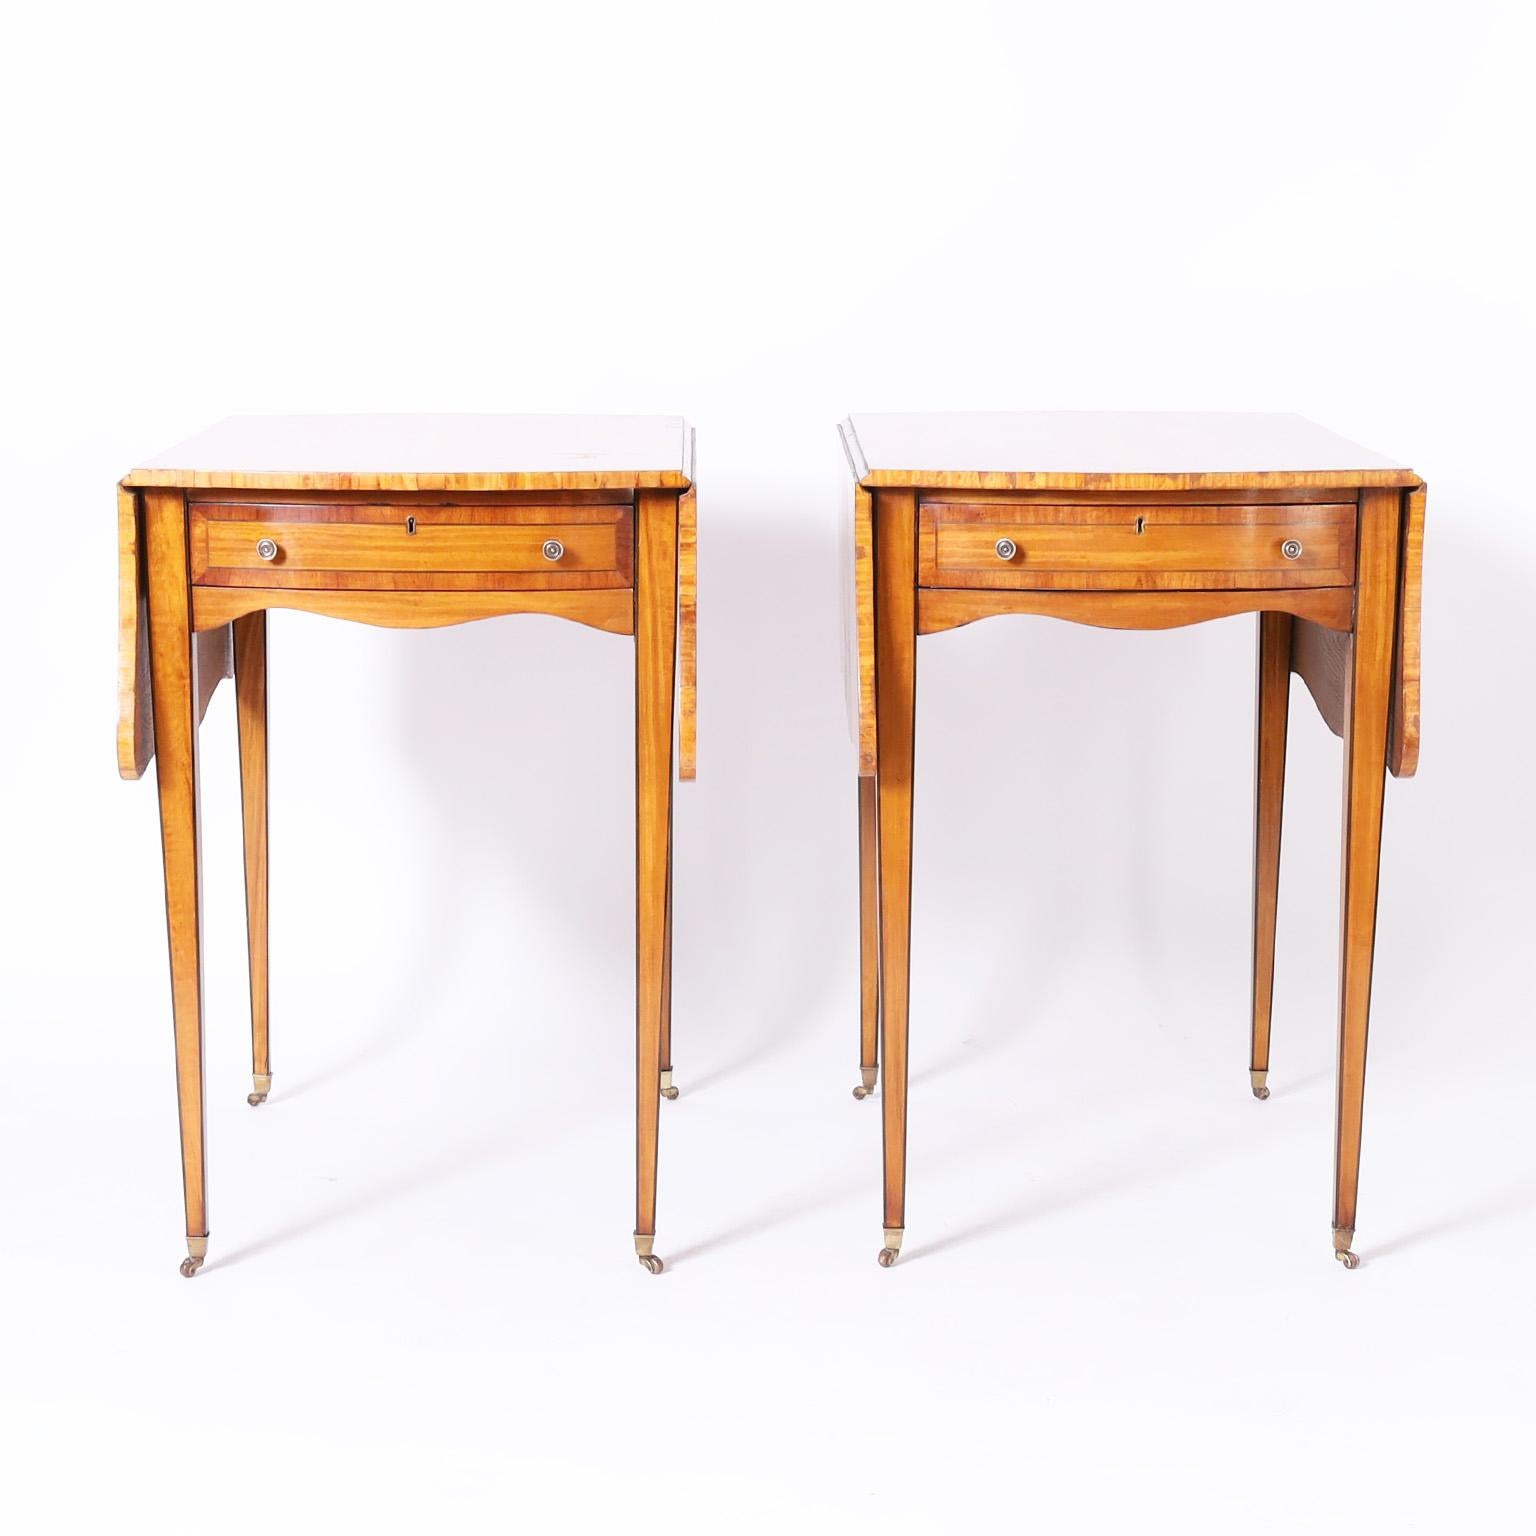 Antica coppia di tavoli inglesi in stile George III realizzati in legno di raso con fasce incrociate in mogano, con un cassetto, ferramenta in ottone e lunghe ed eleganti gambe con rotelle in ottone.

Profondità da chiuso: 32